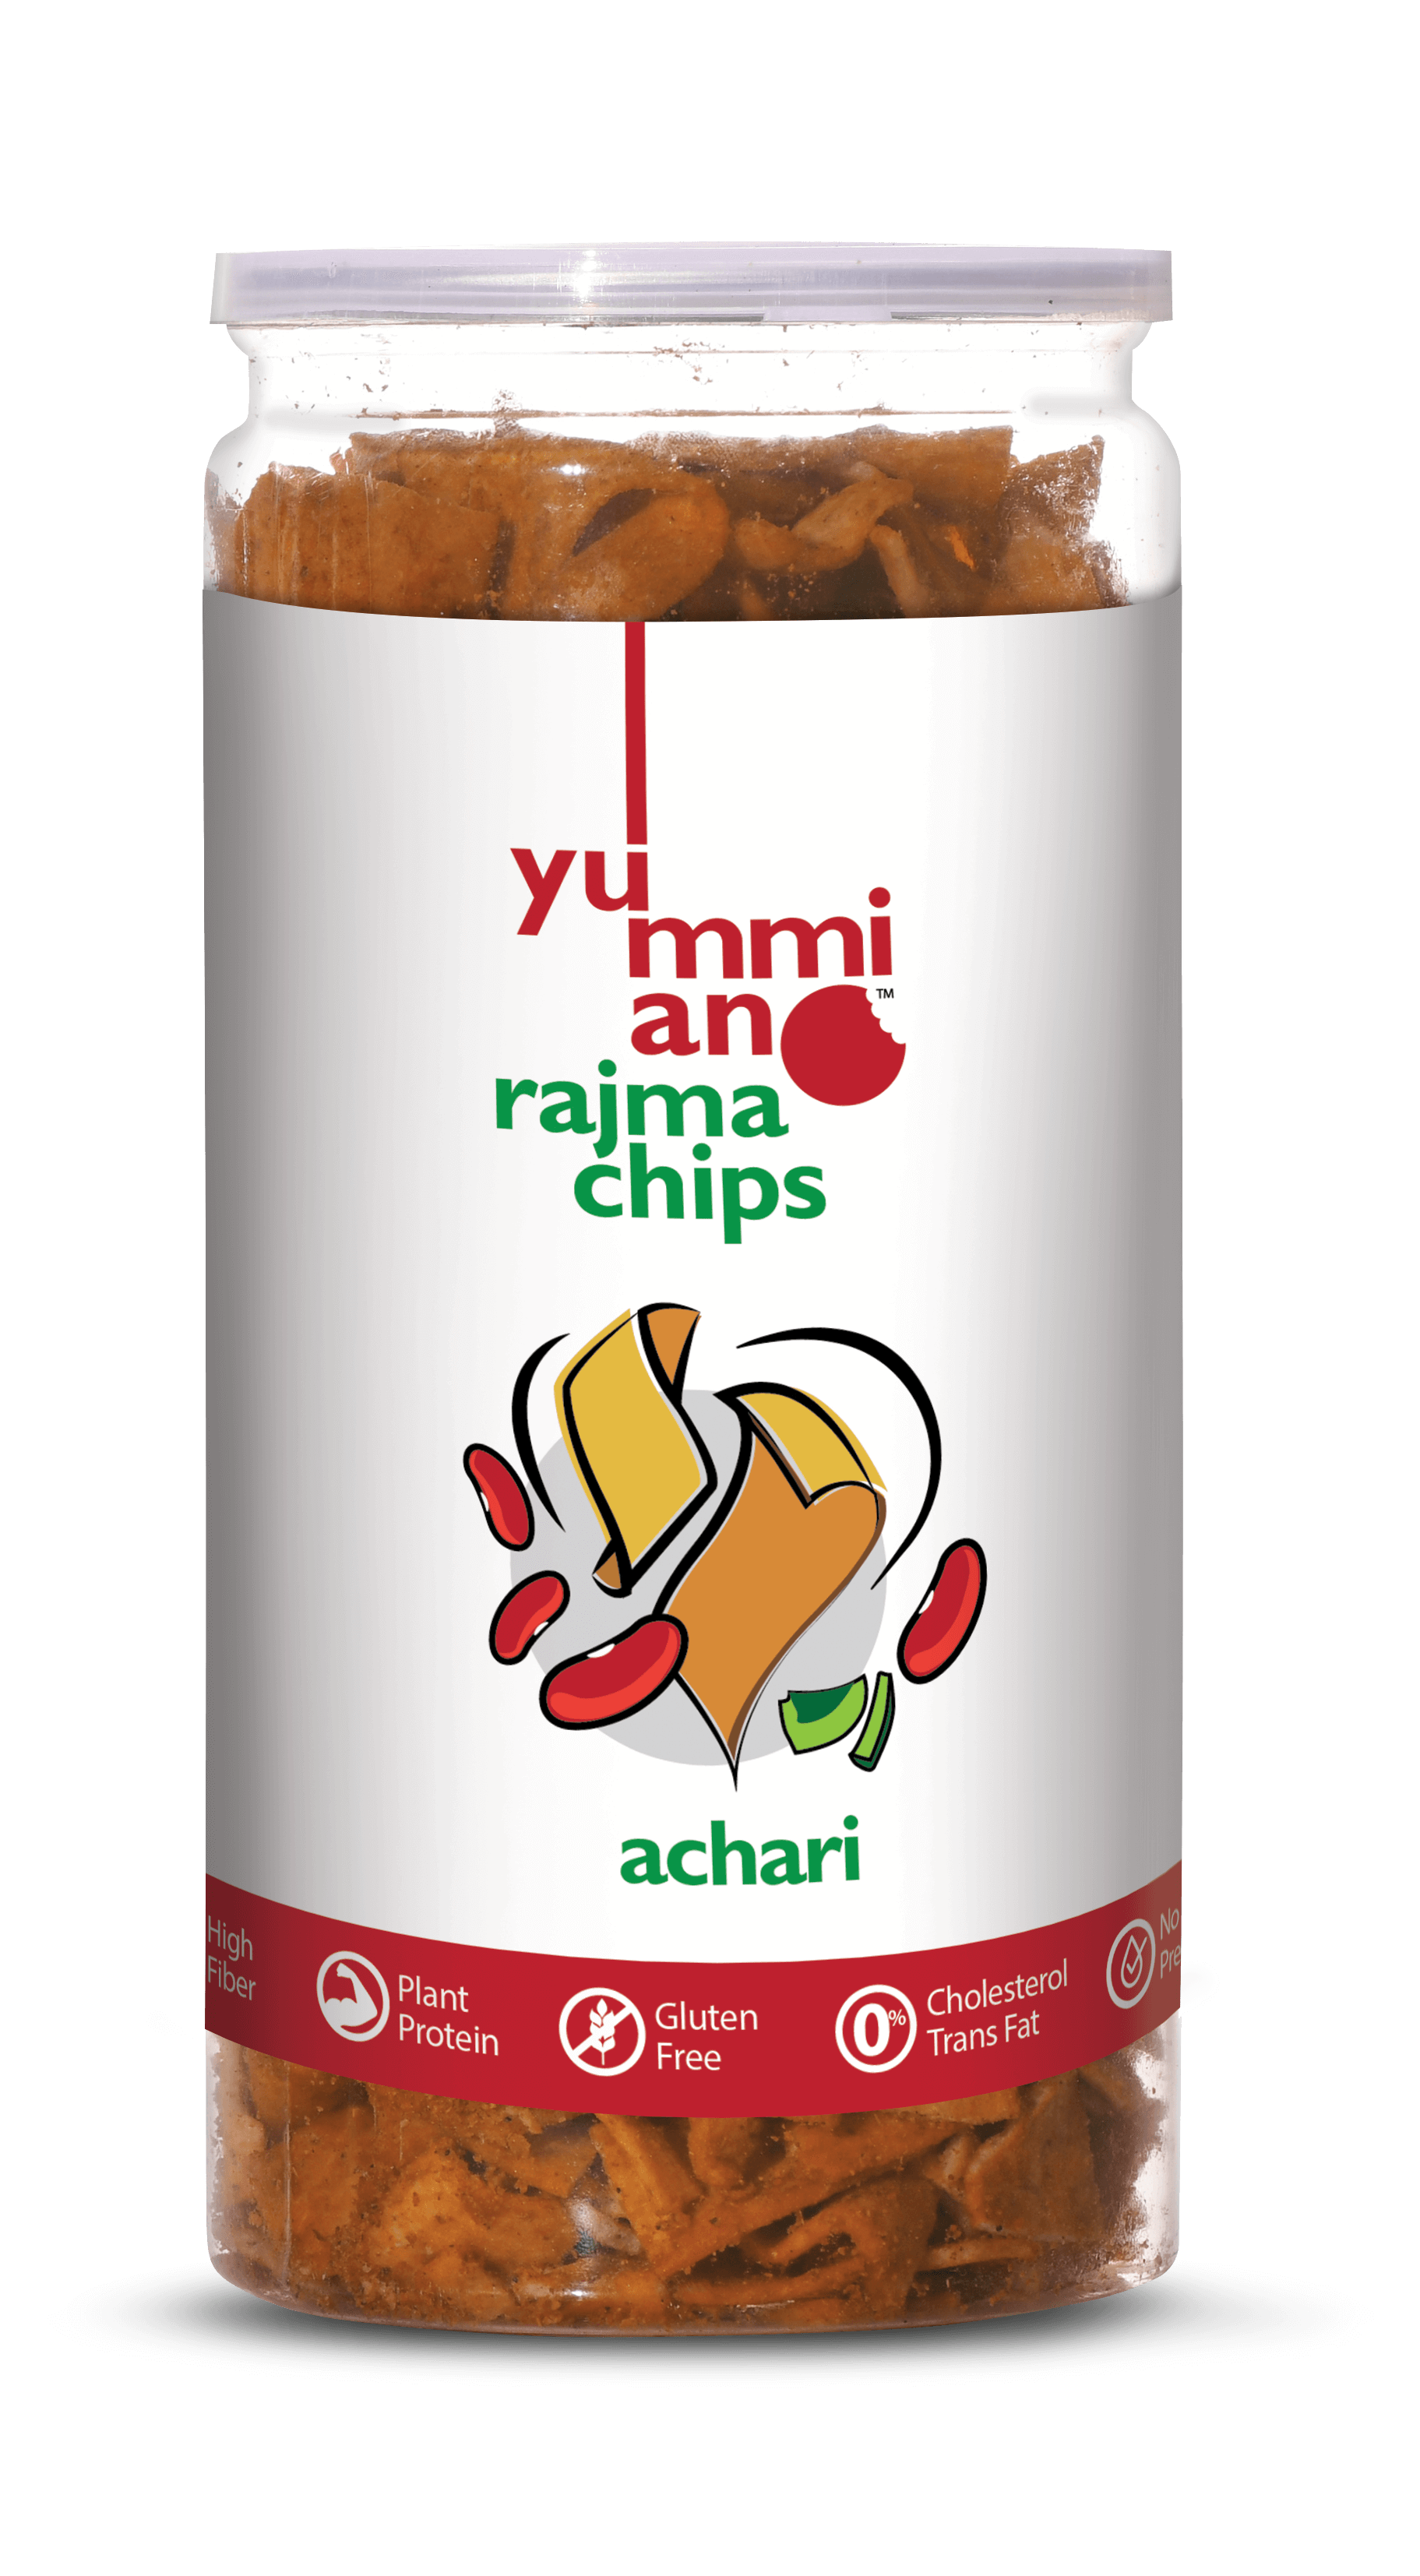 YummianoÂ¬Â¨âˆšÃœ Rajma Chips â€šÃ„Ã¶âˆšÃ‘âˆšÂ¨ Achari Image